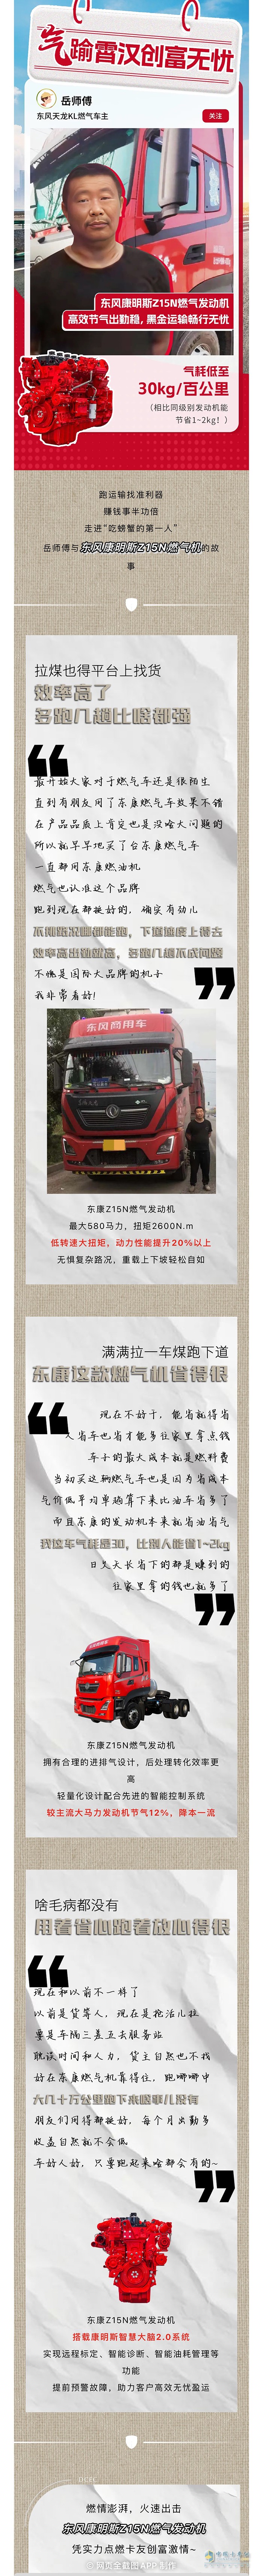 最早购入东康燃气车能省能跑岳师傅说这几年比别人多赚不少钱